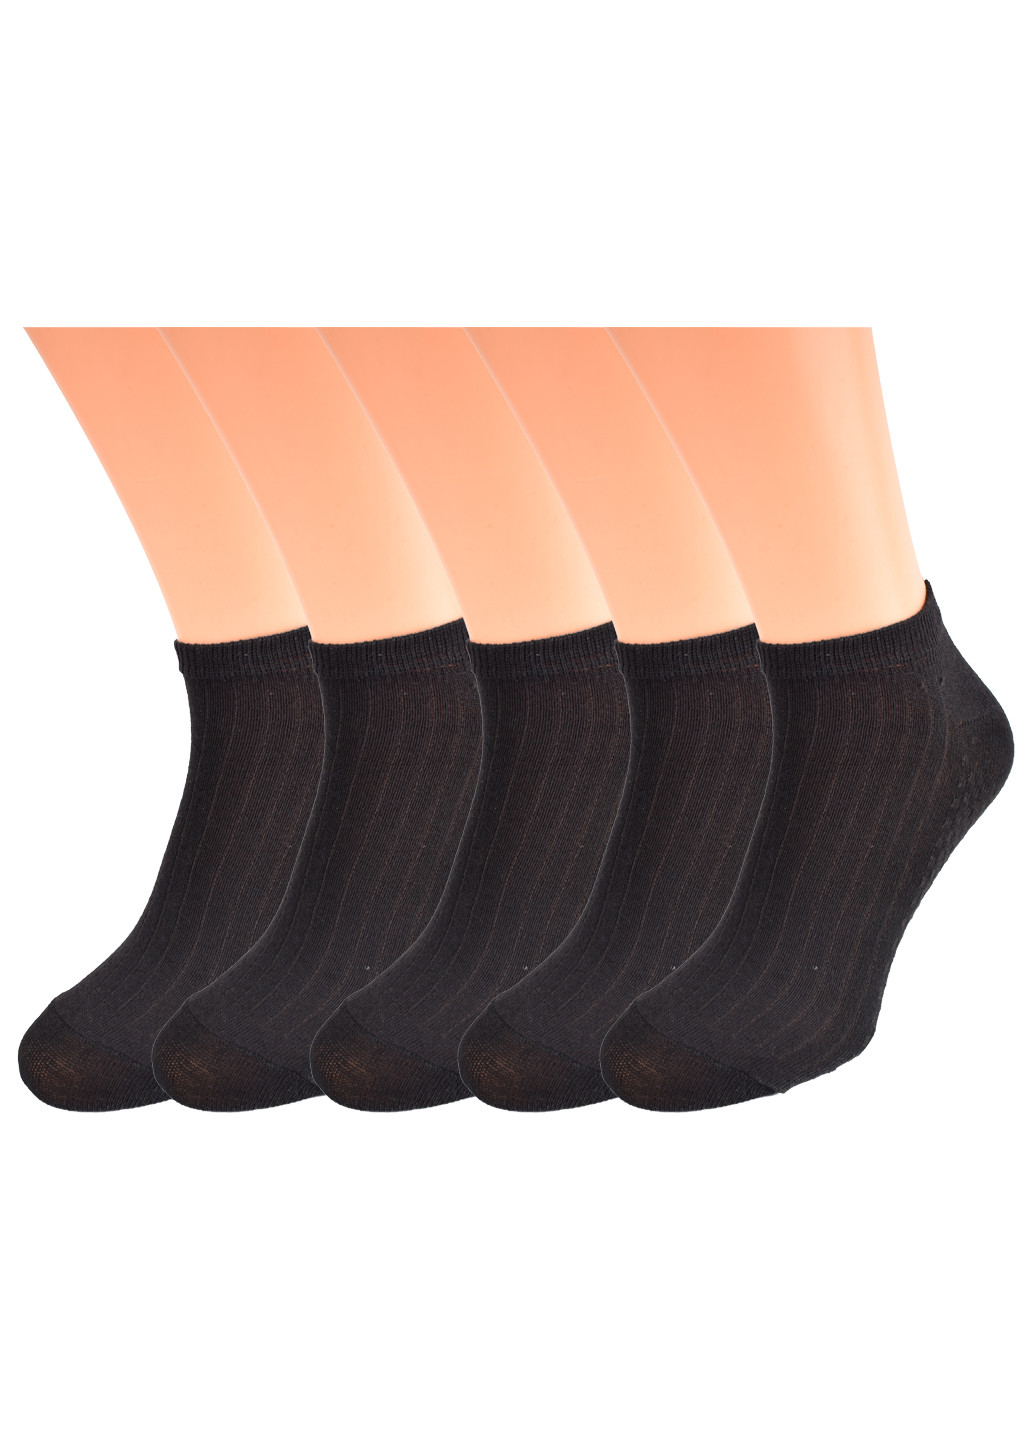 Набор мужских носков с сеткой (5 пар) Дукат однотонные чёрные повседневные